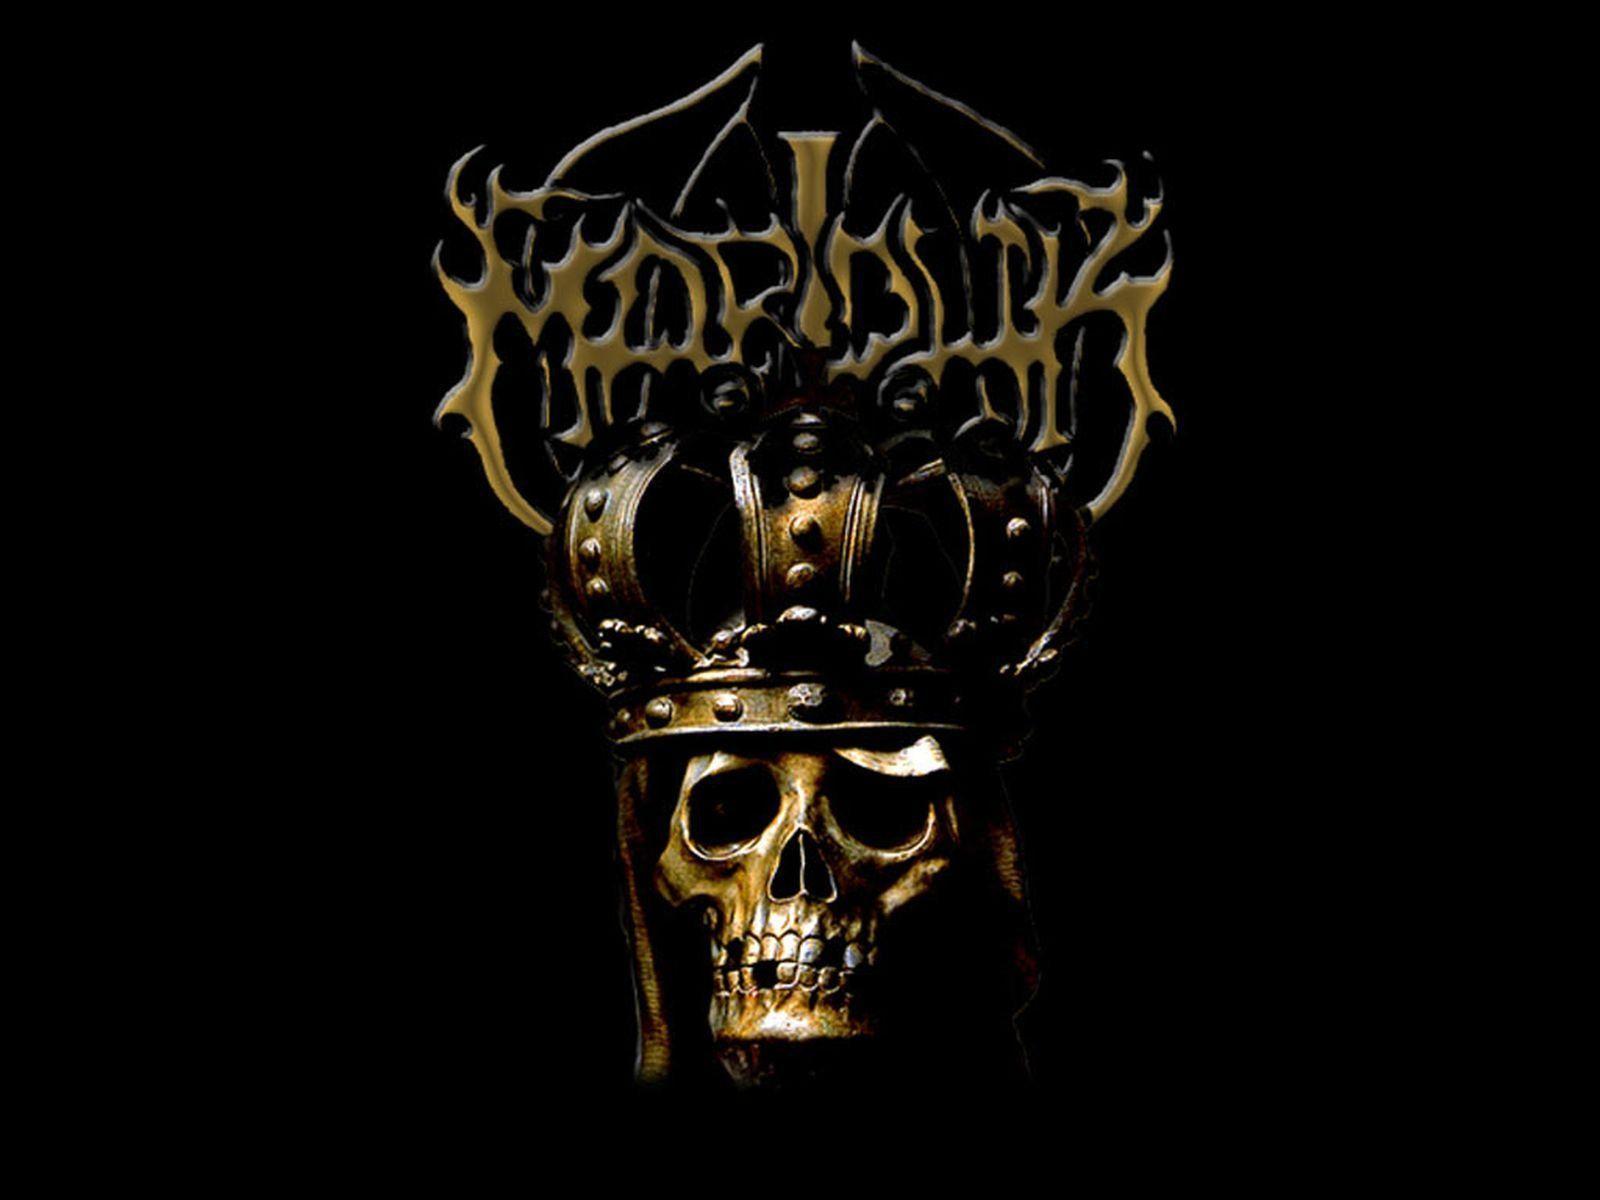 MARDUK black metal heavy hard rock dark skull skulls wallpaper